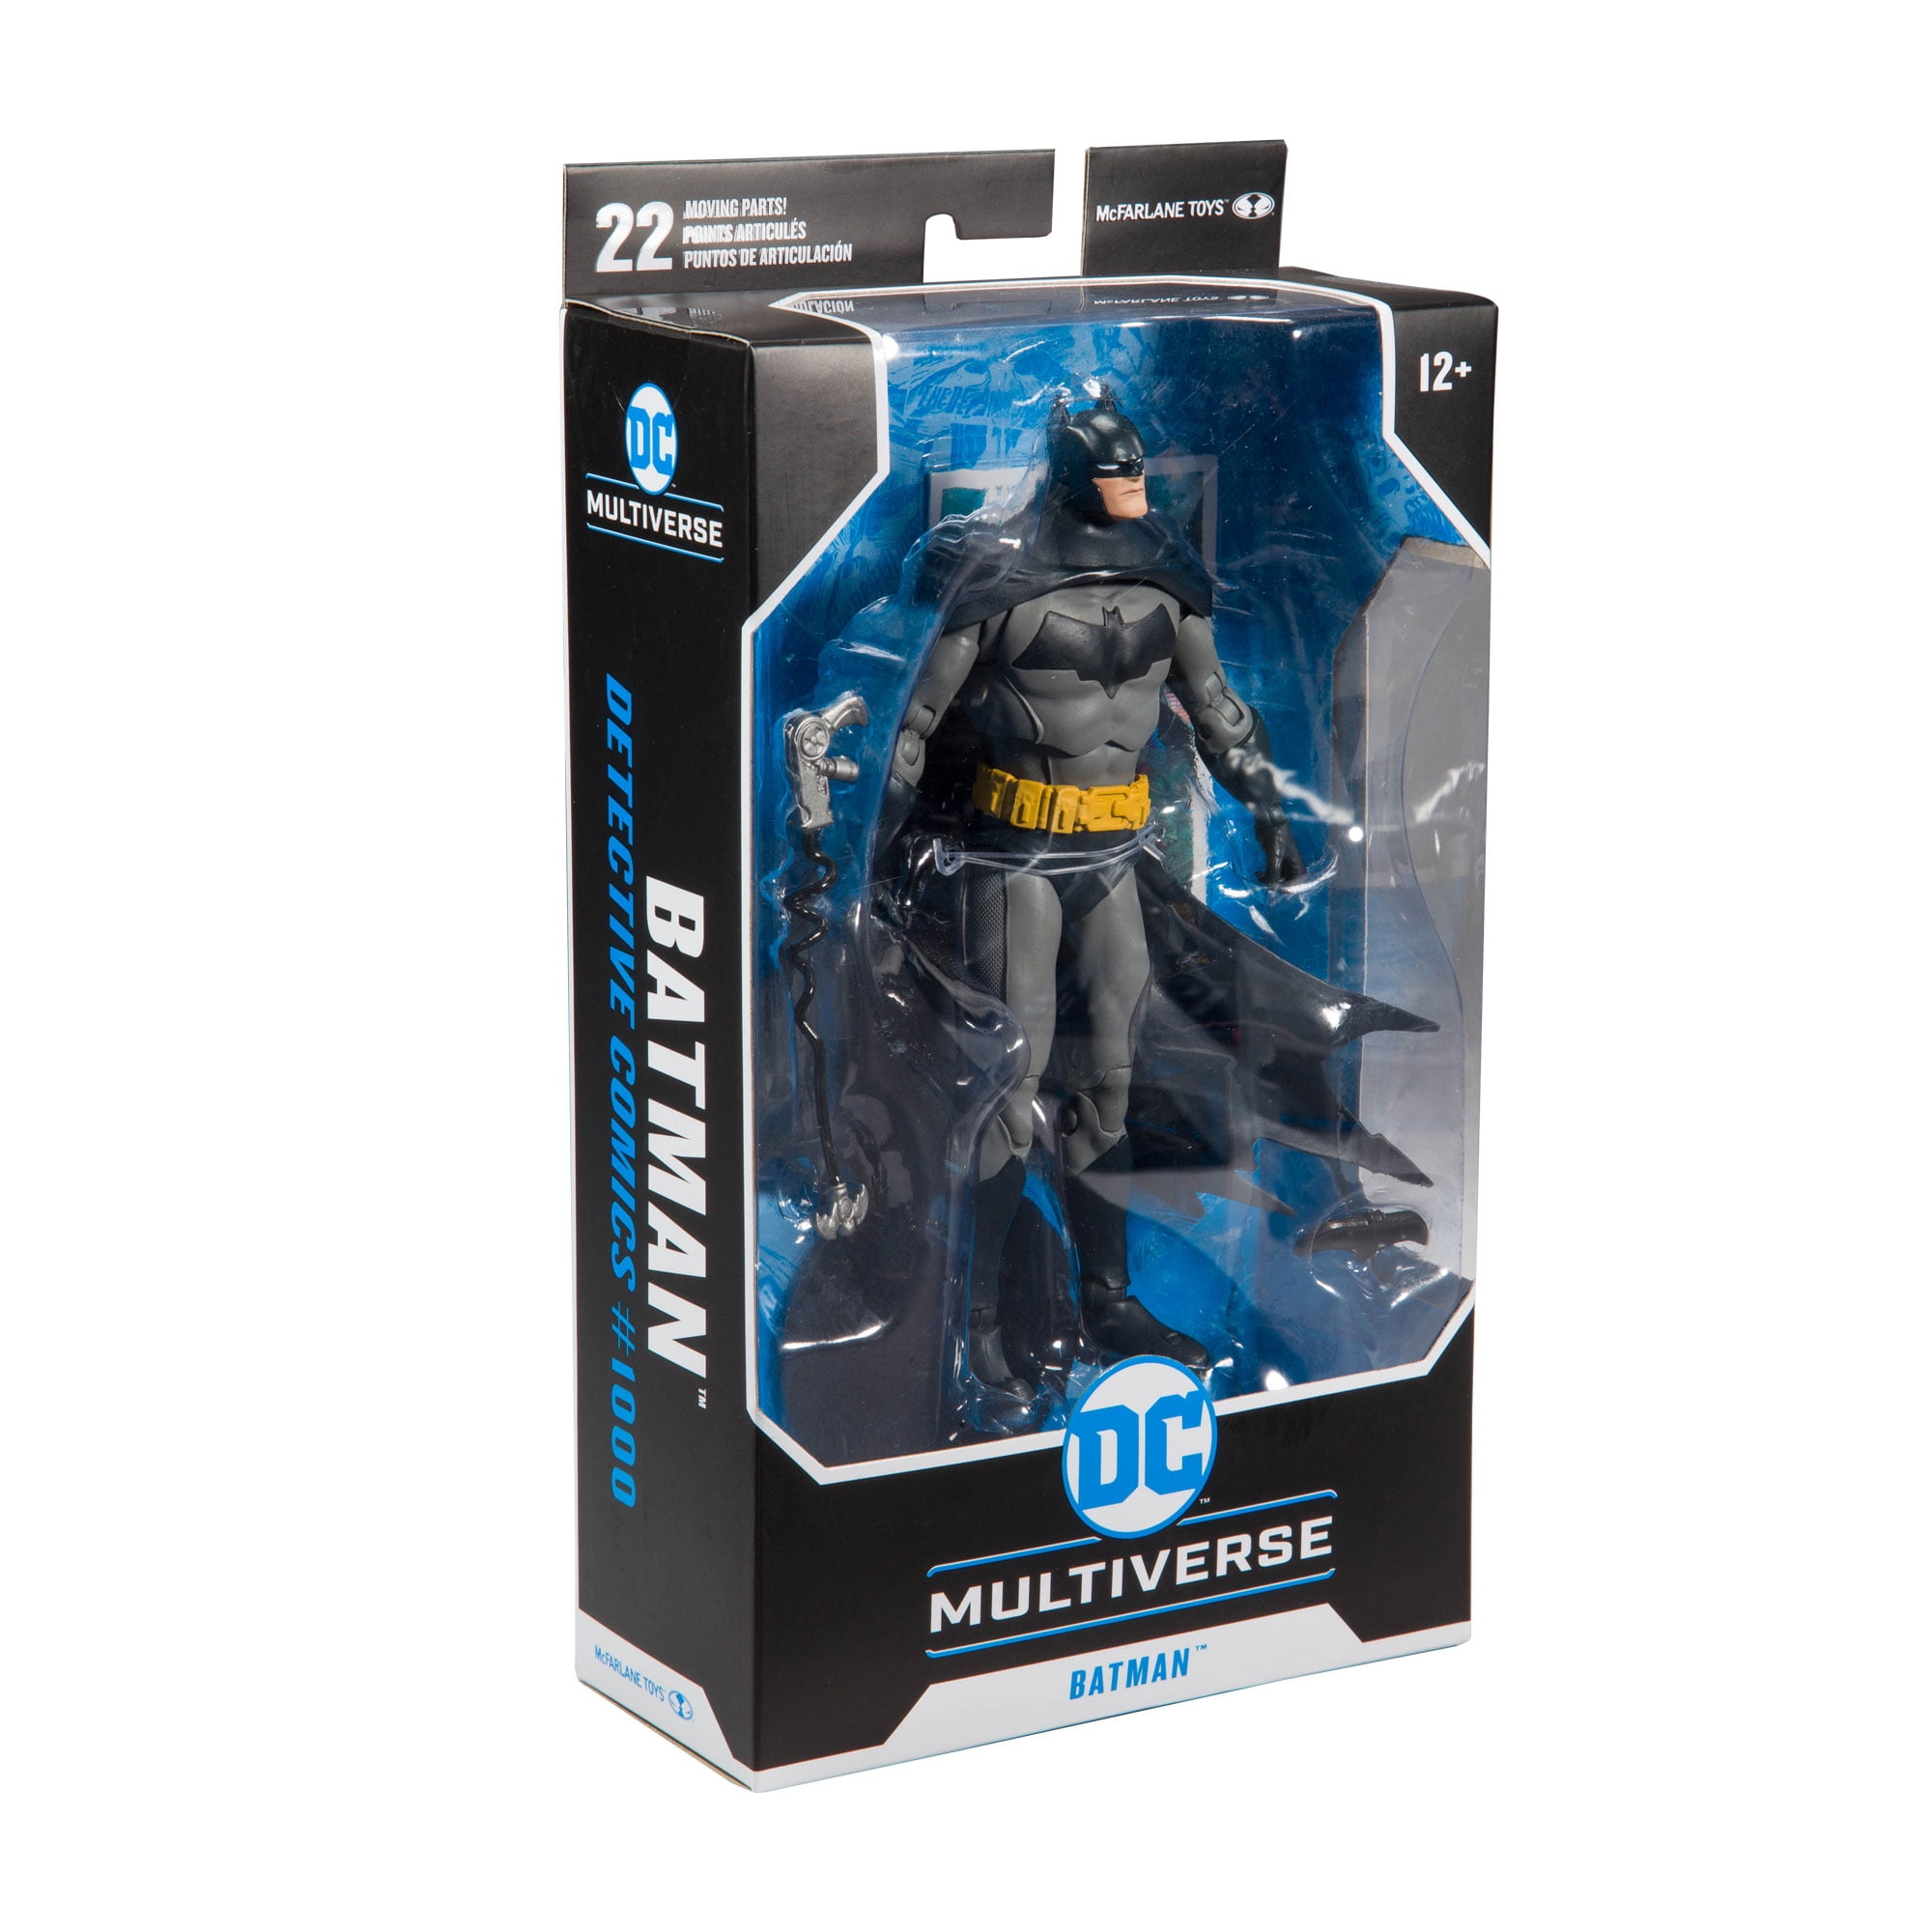 McFarlane Toys Batman 7 inch Action Figure 155013 for sale online 